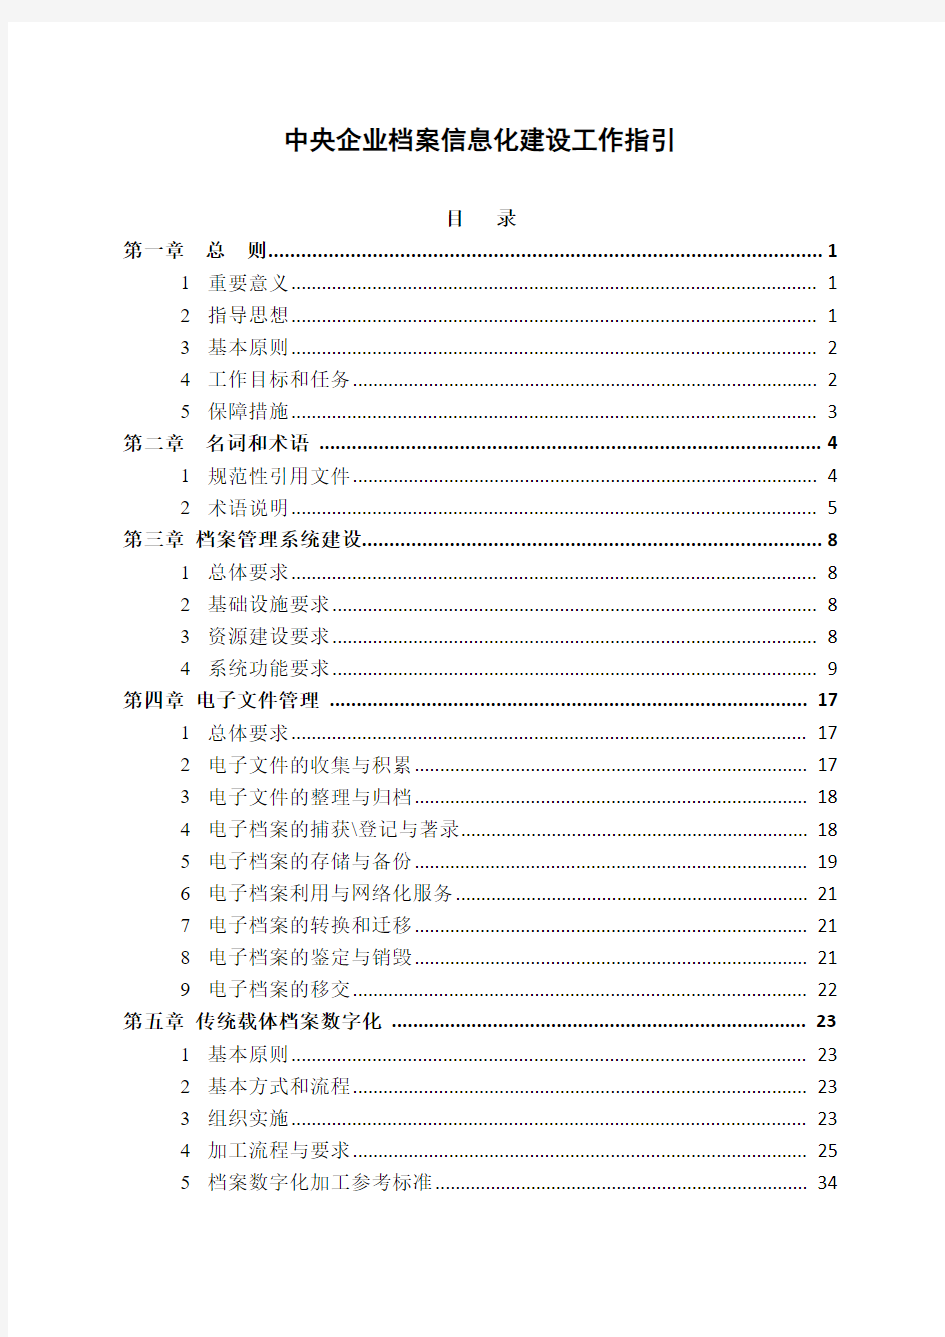 中央企业档案信息化建设工作指引20140113修改稿